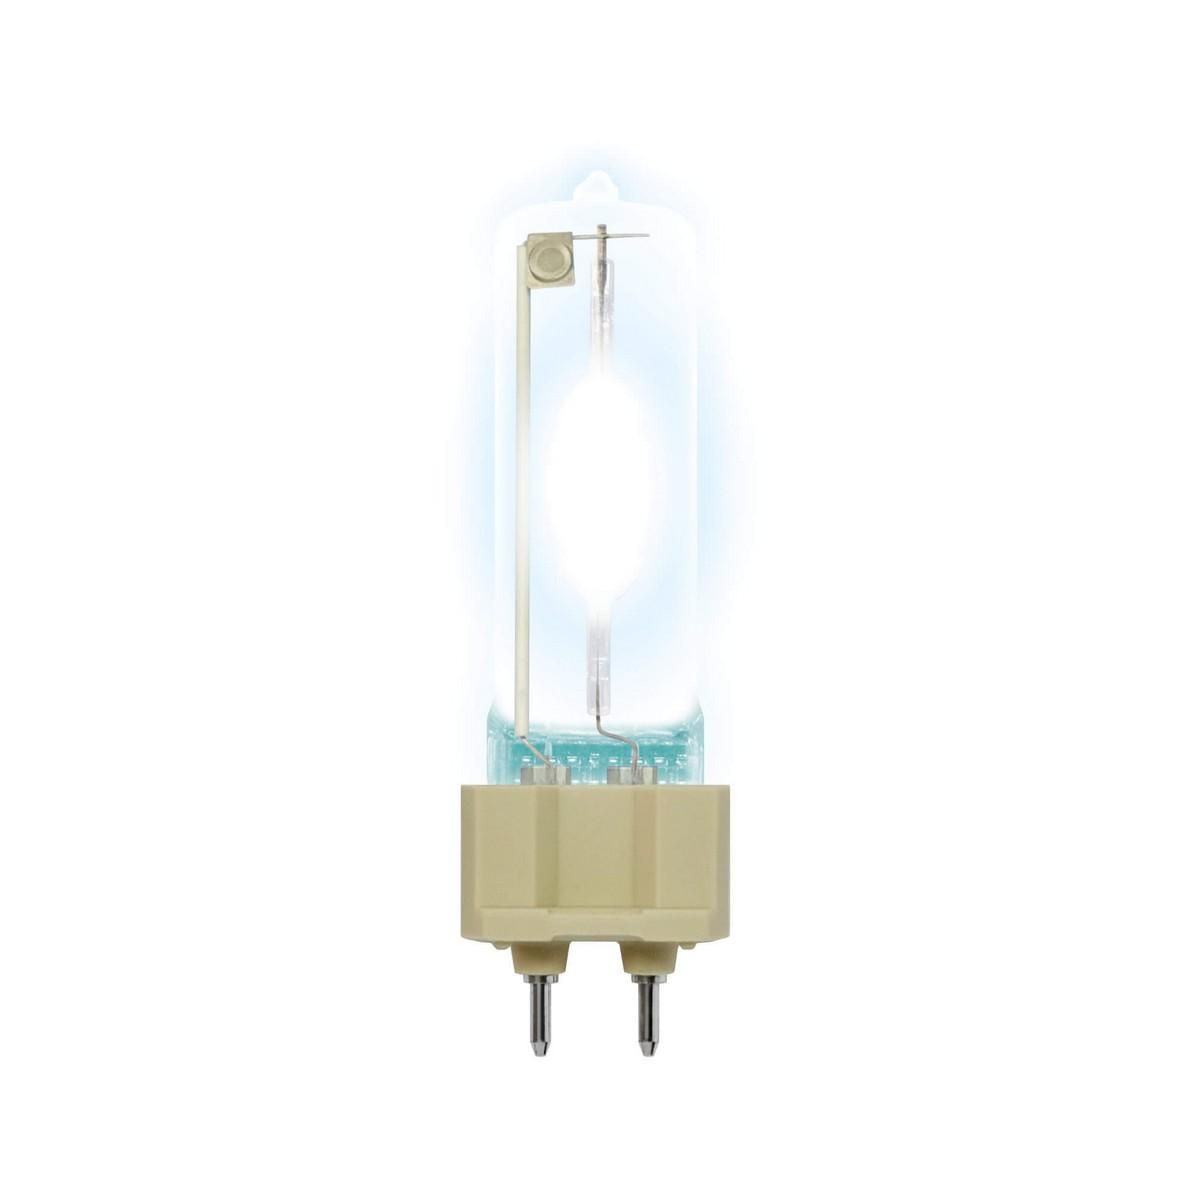 Лампа металогалогенная (03805) Uniel G12 150W 3300К прозрачная MH-SE-150/3300/G12